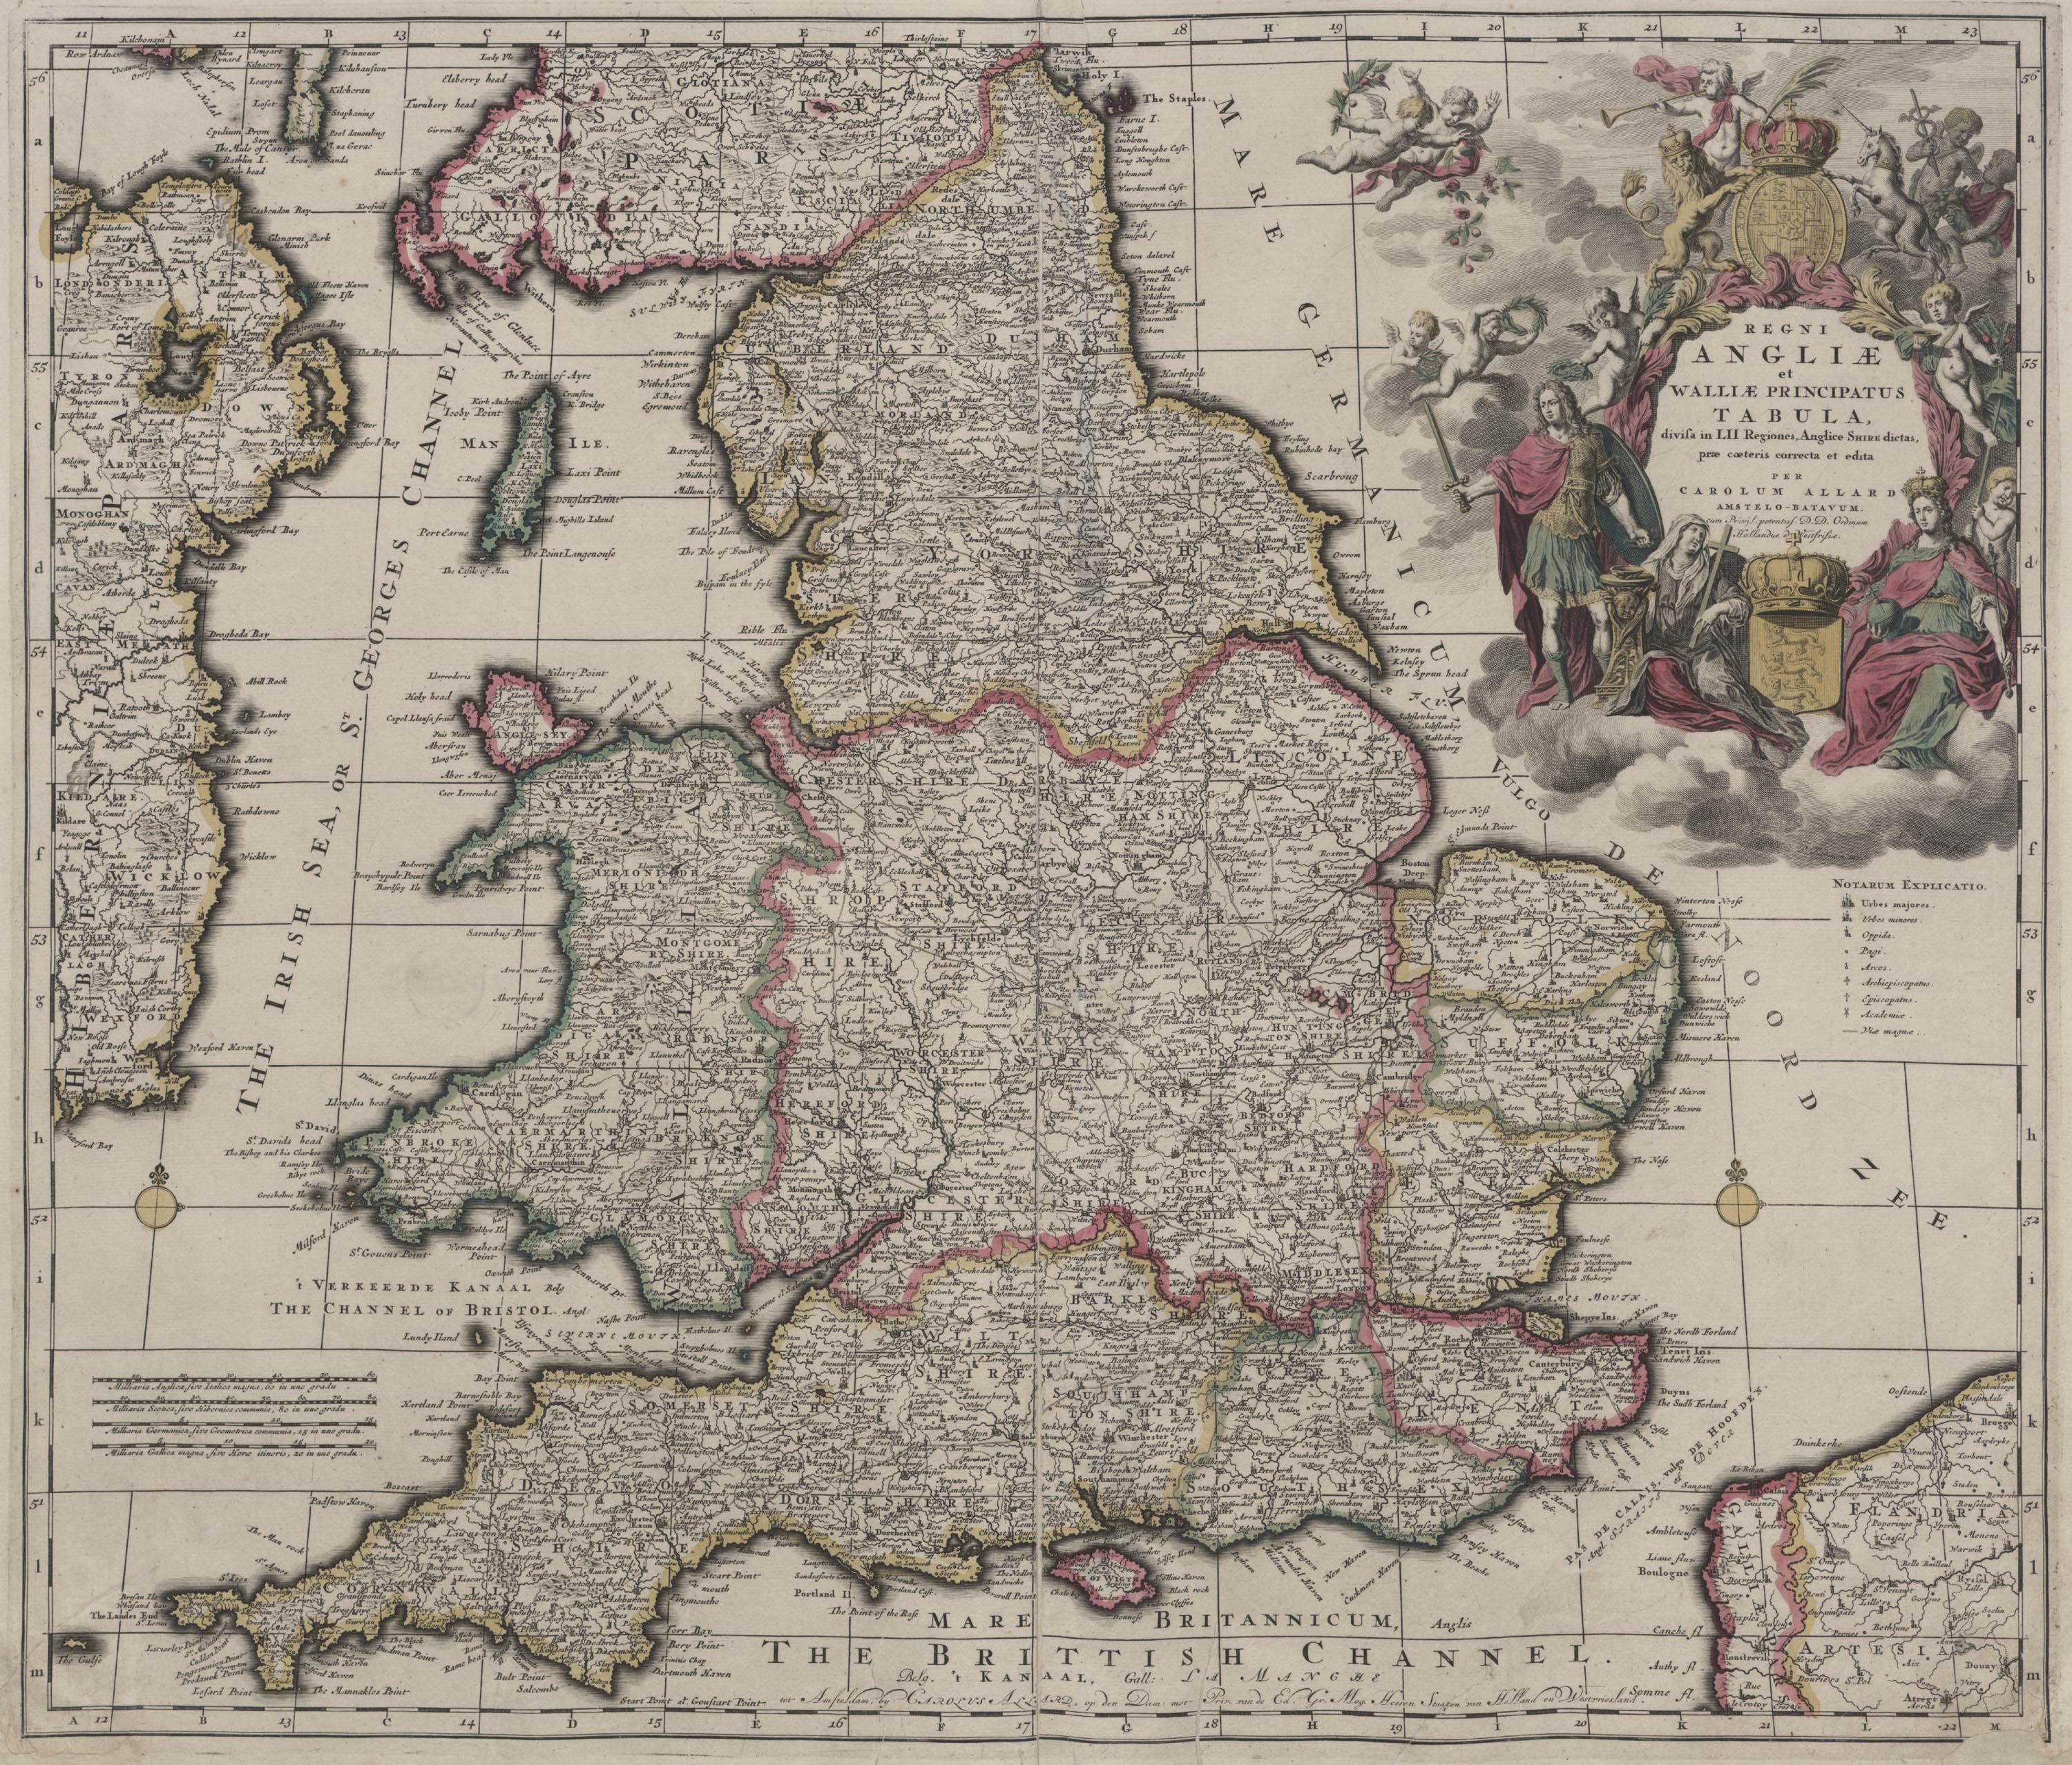 Anglia (c. 1689)